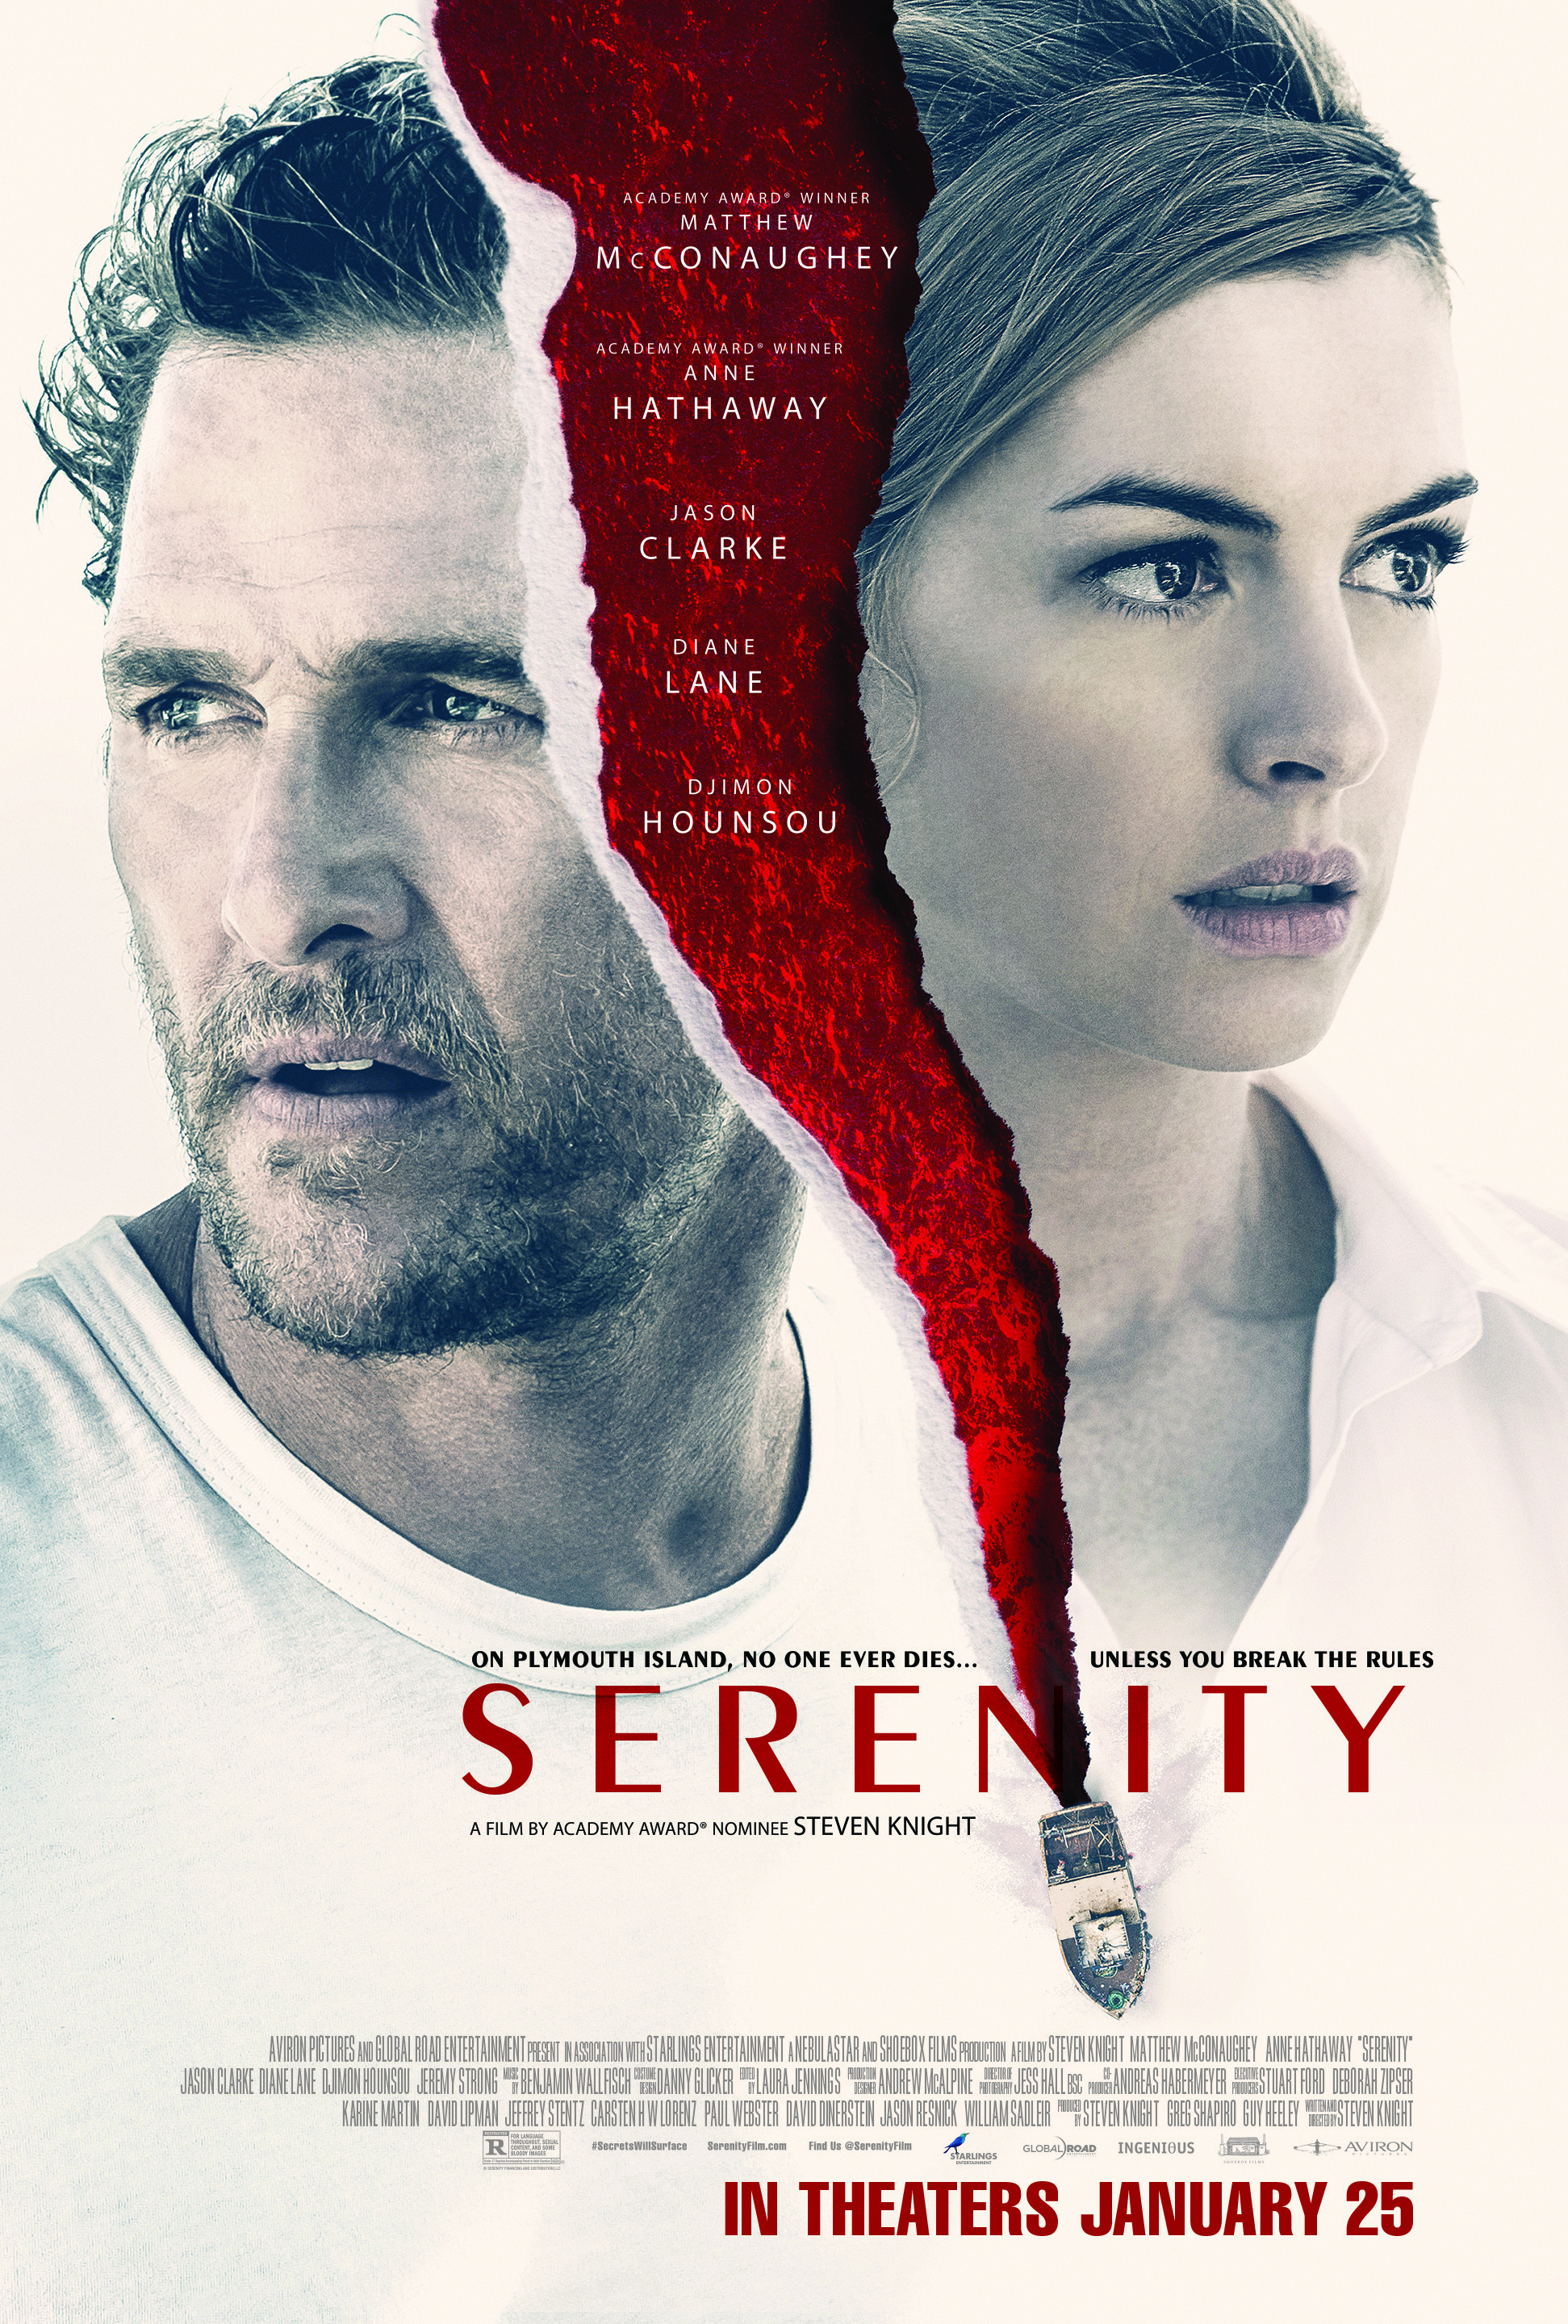 Serenity (2019) Reviews